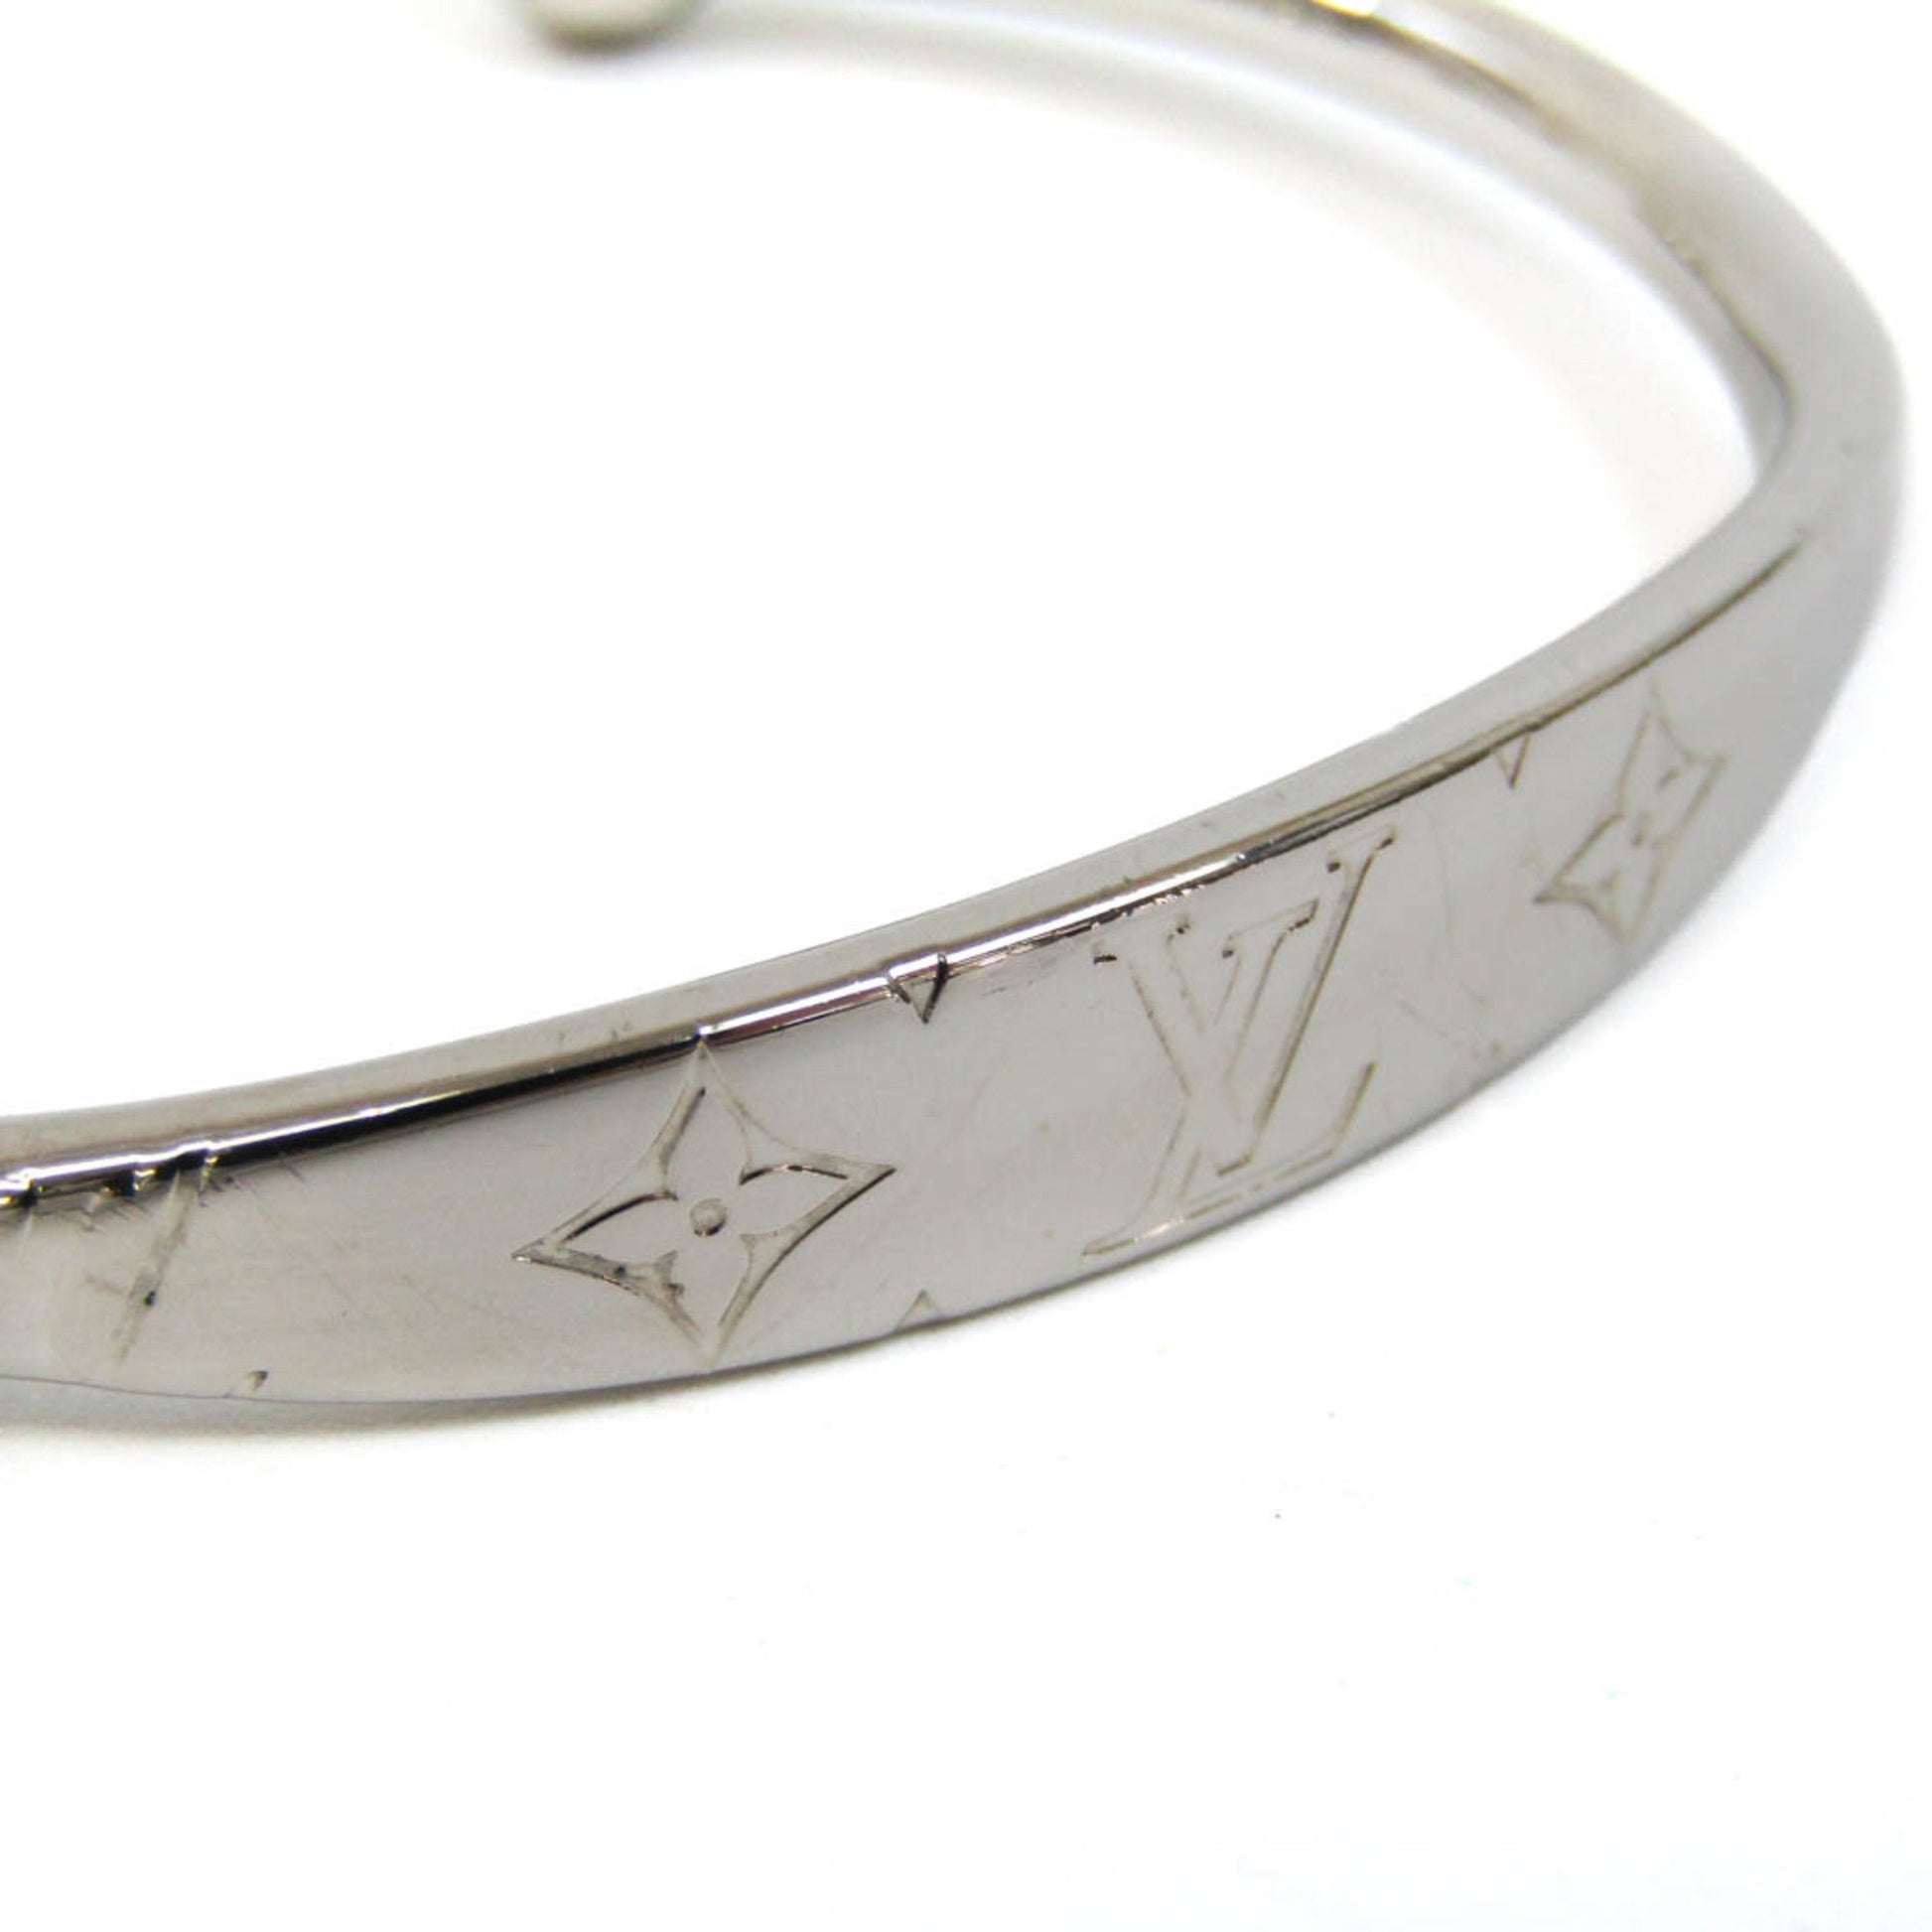 Louis Vuitton bracelet M64840 women's bangle monogram pattern